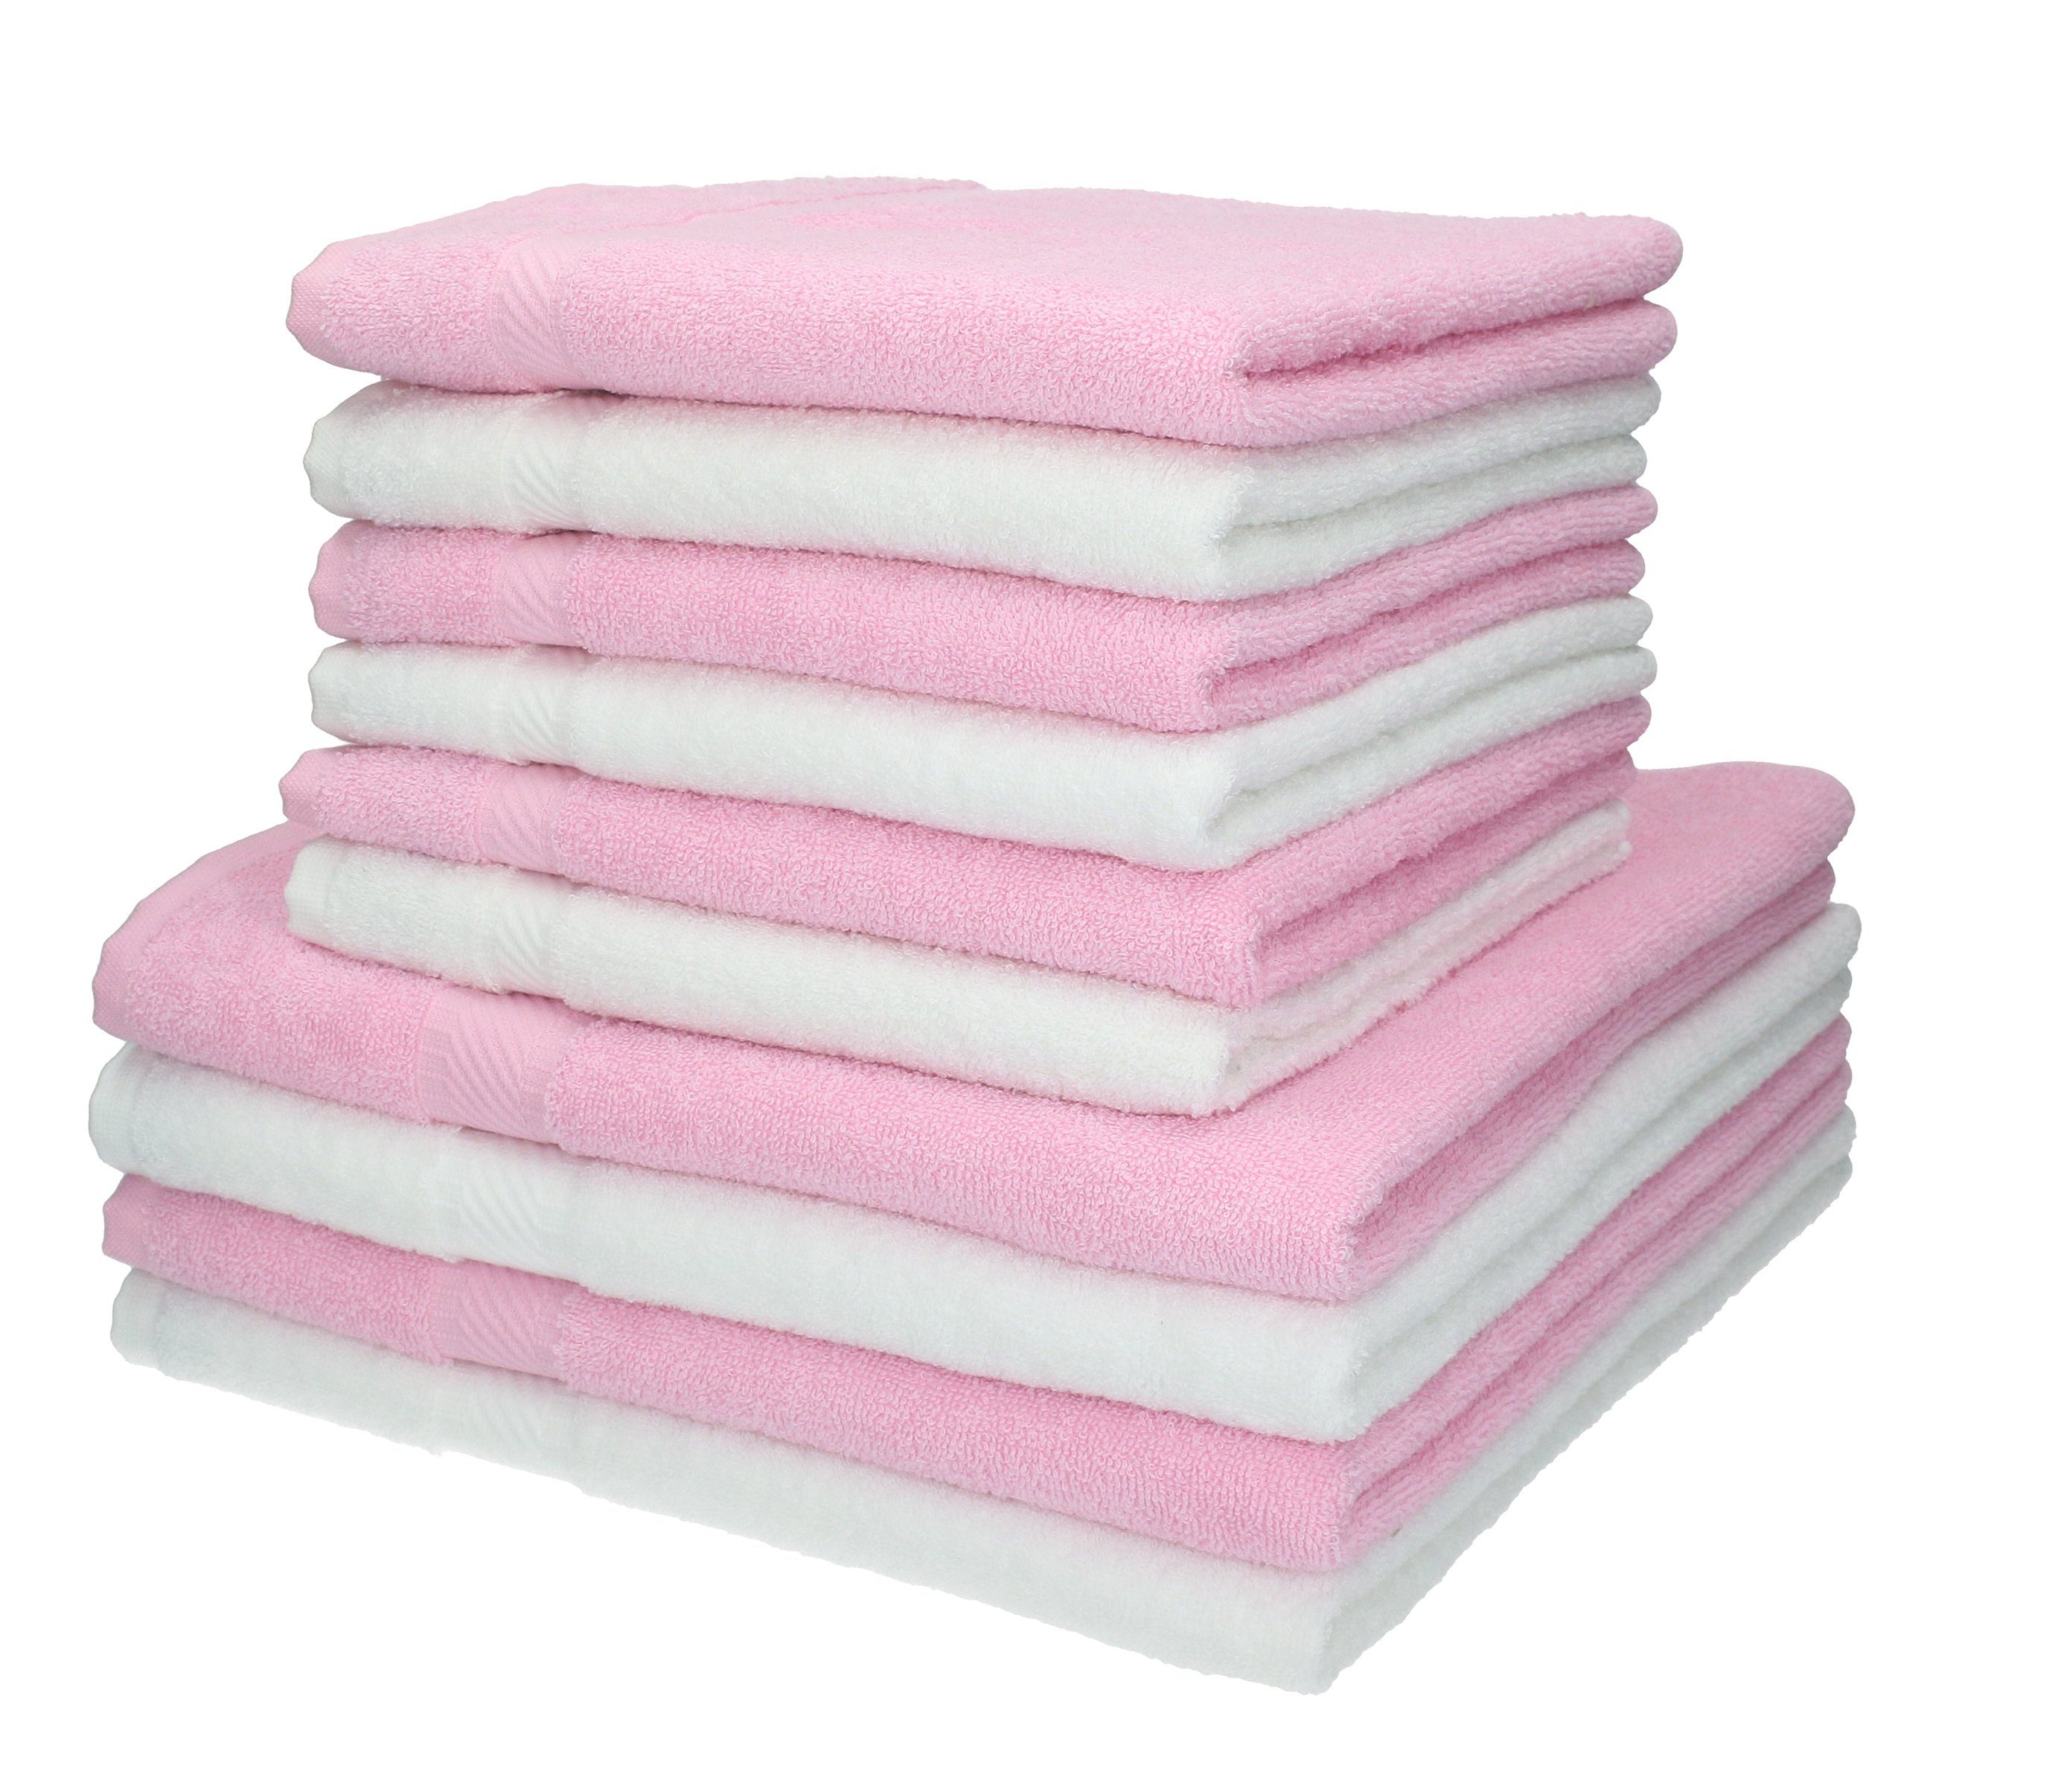 Betz Handtuch Set 10-TLG. Handtuch-Set Palermo Farbe weiß und rosé, 100% Baumwolle